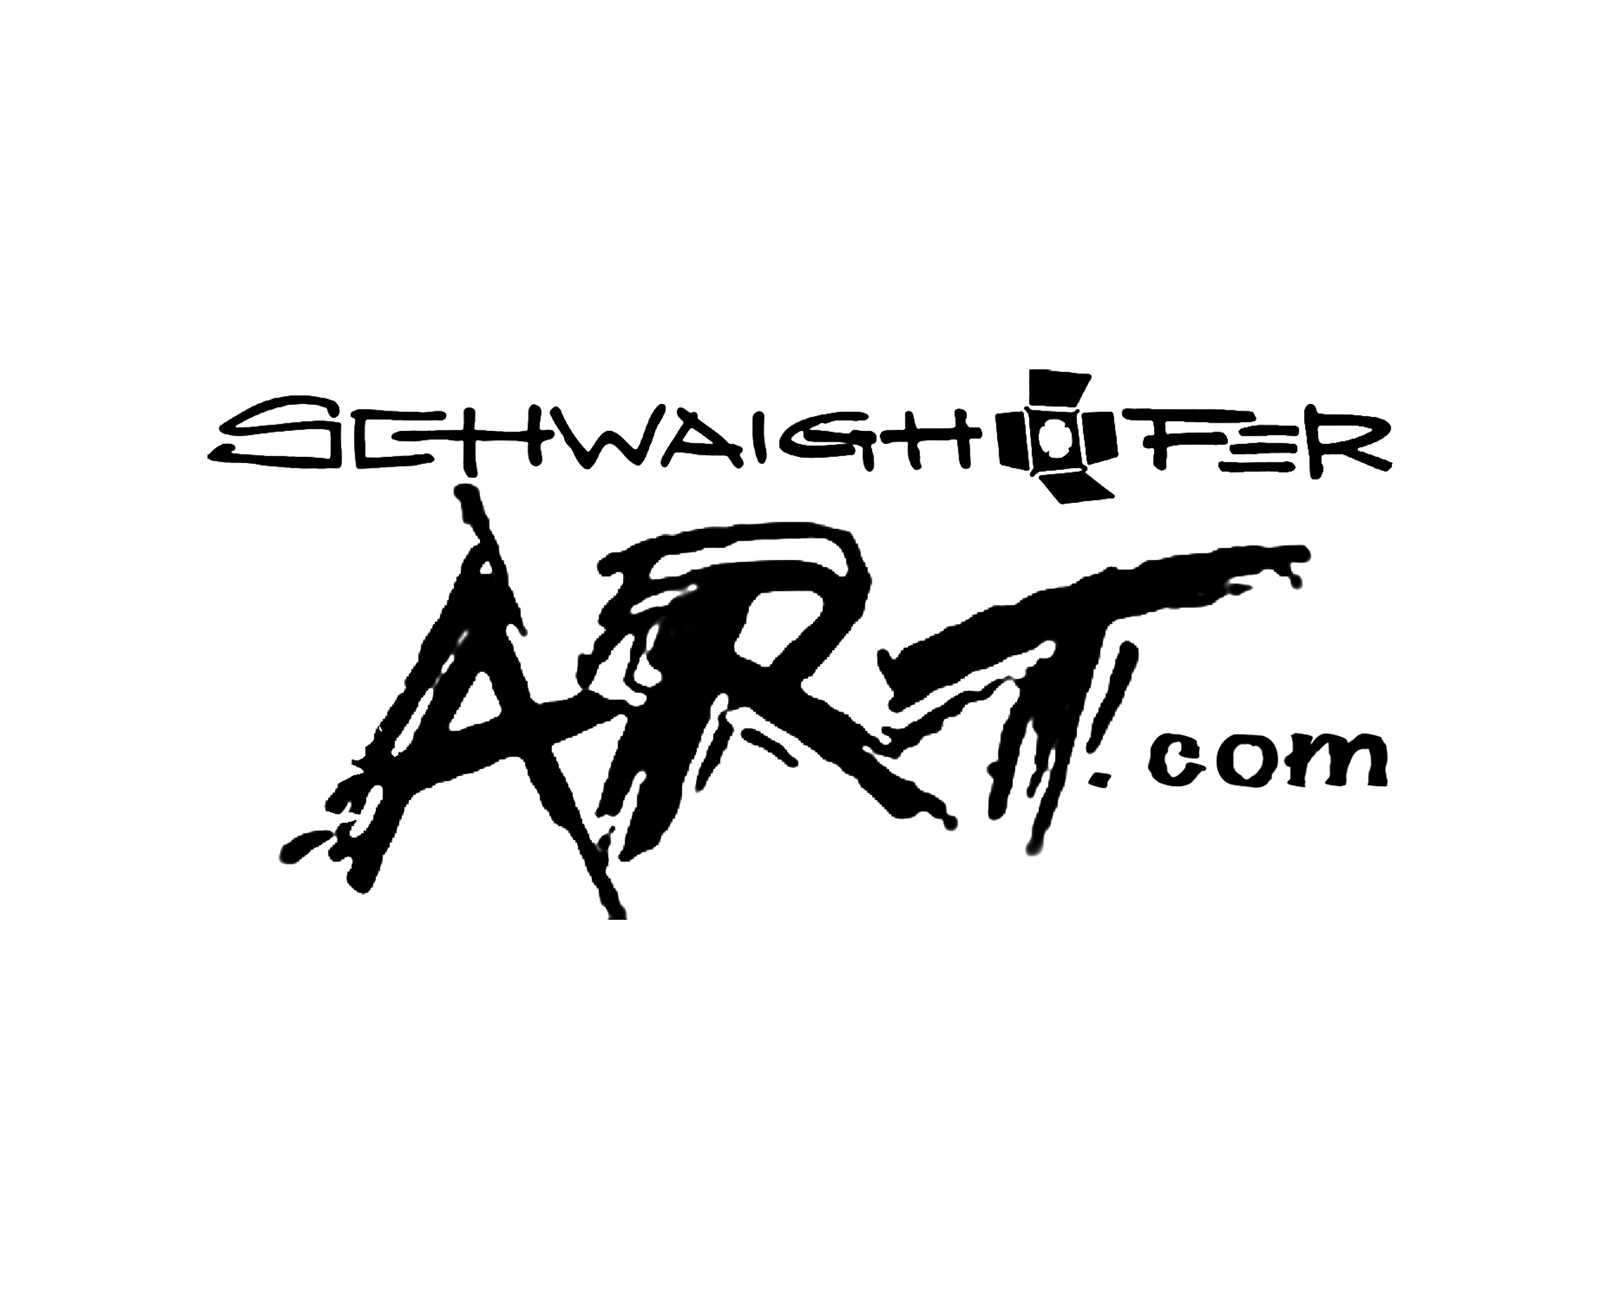 schwaighofer-art-logo-referenz-ultim8media-black